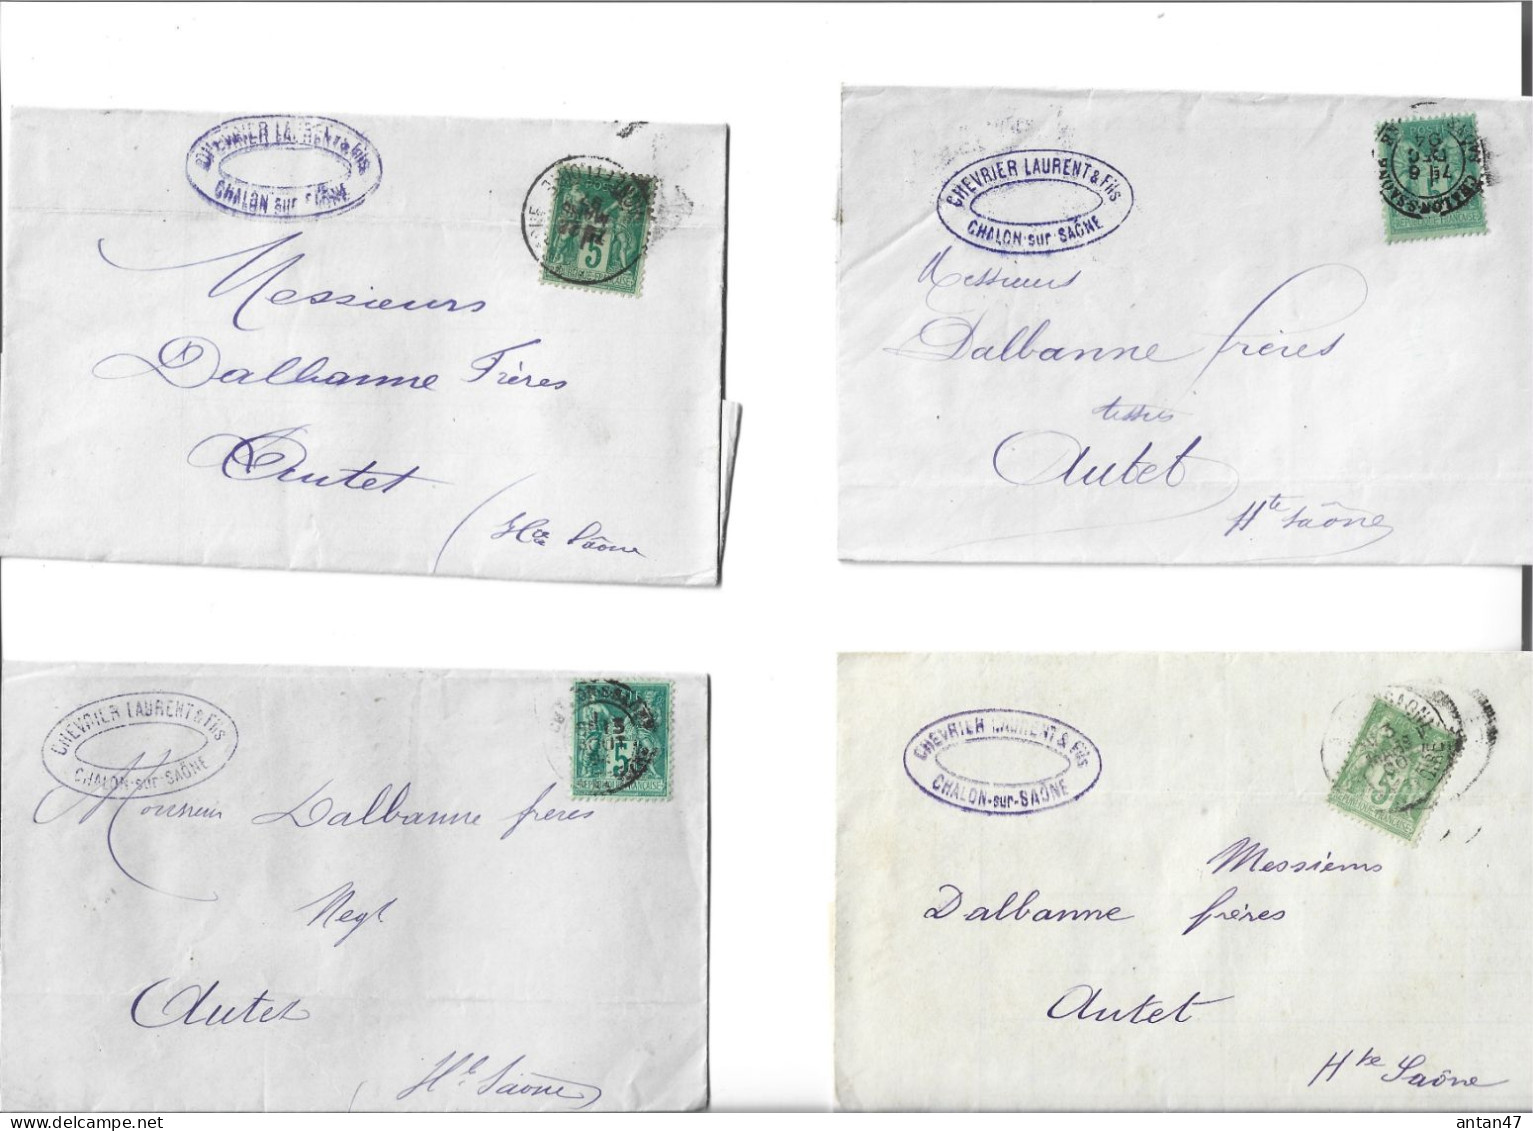 16 factures 1894-99 / 71 CHALON SUR SAONE / LILLE ROUEN REIMS ROANNE / CHEVRIER LAURENT ->70 AUTET Dalbanne